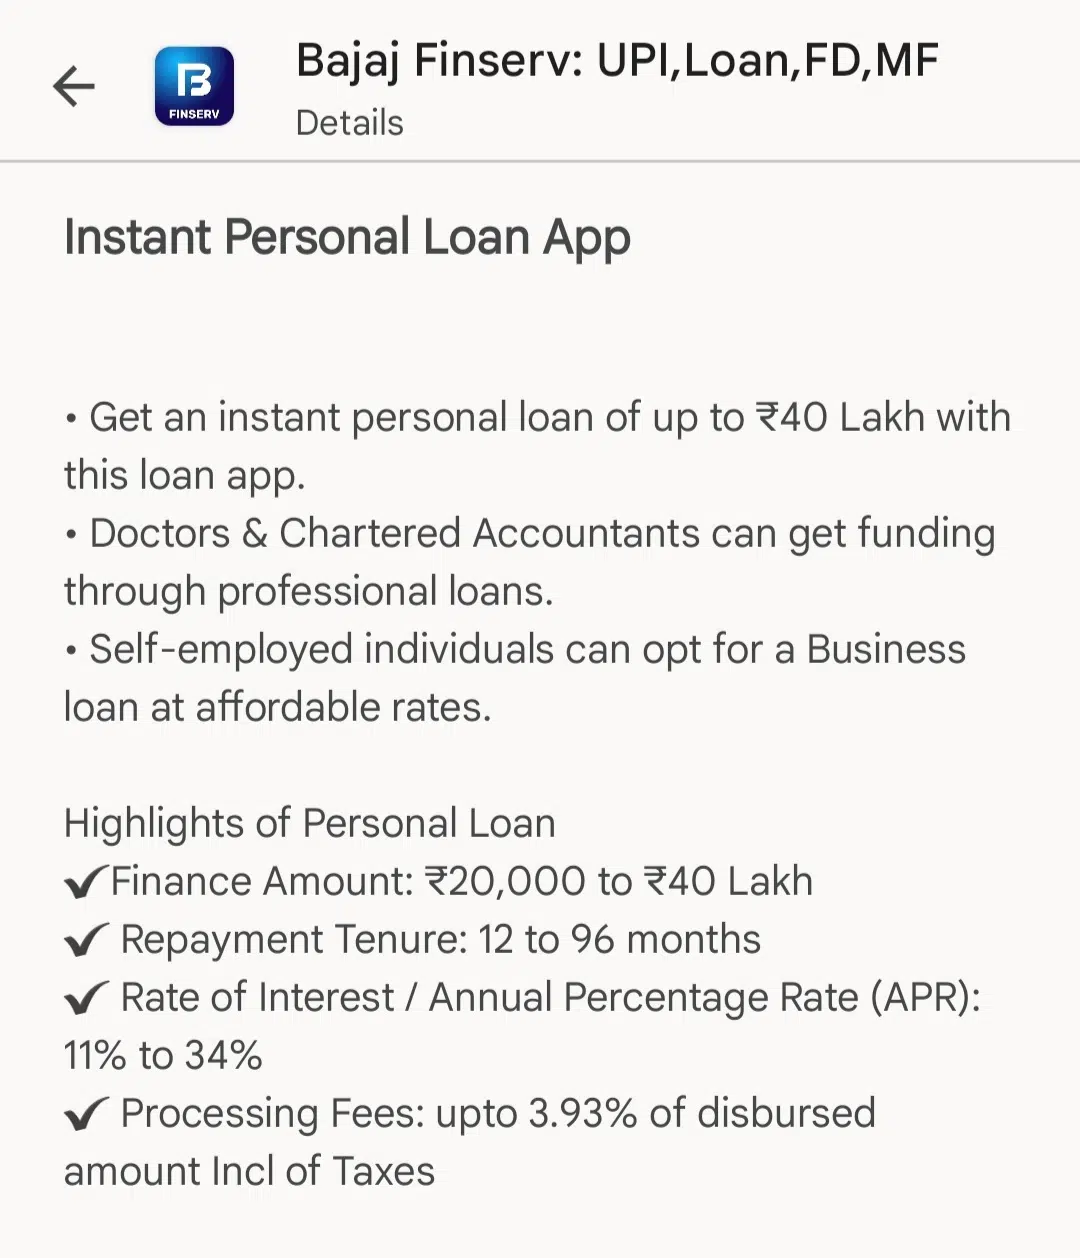 bajaj finserv loan app instant personal loan details